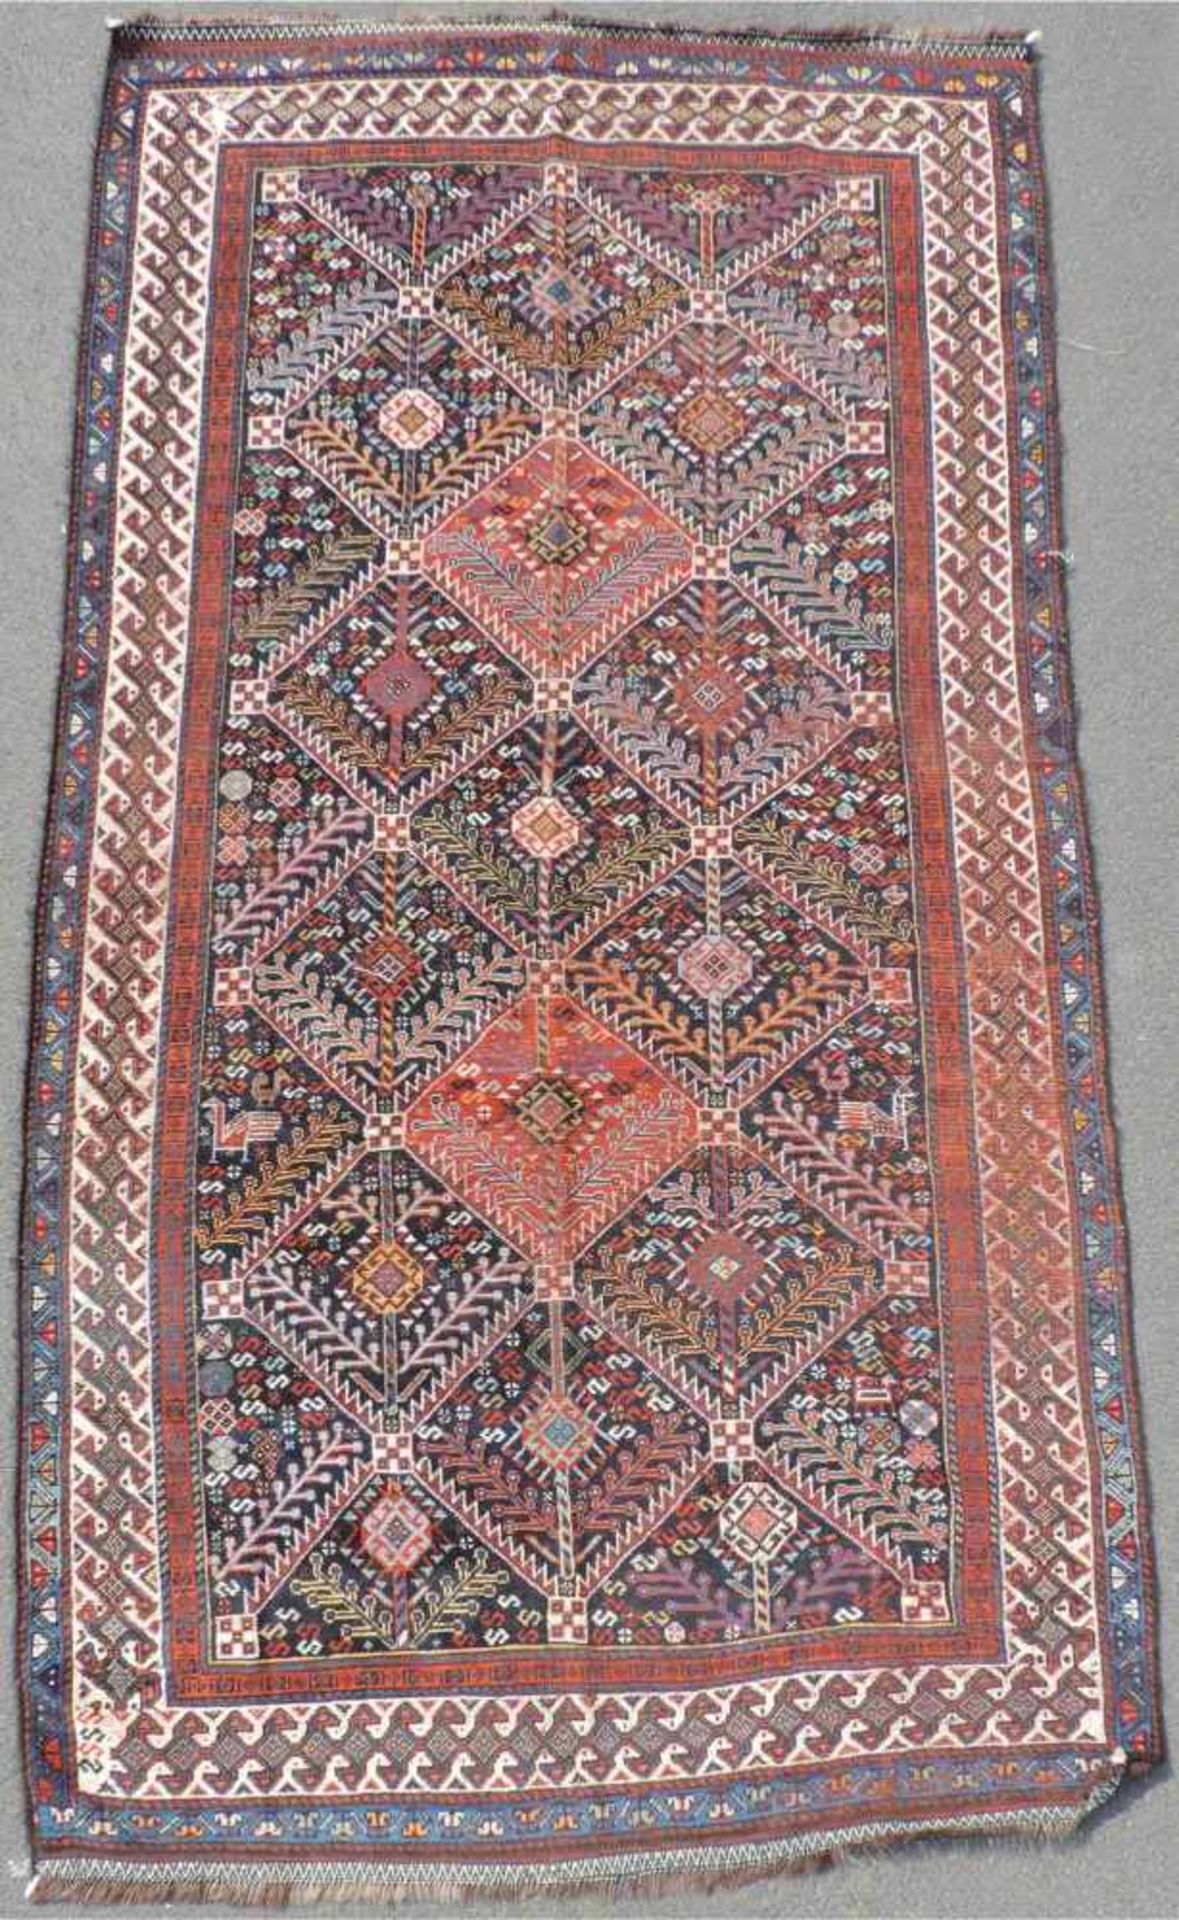 Niriz Perserteppich. Iran. Antik, um 1910.278 cm x 156 cm. Handgeknüpft. Wolle auf Wolle.